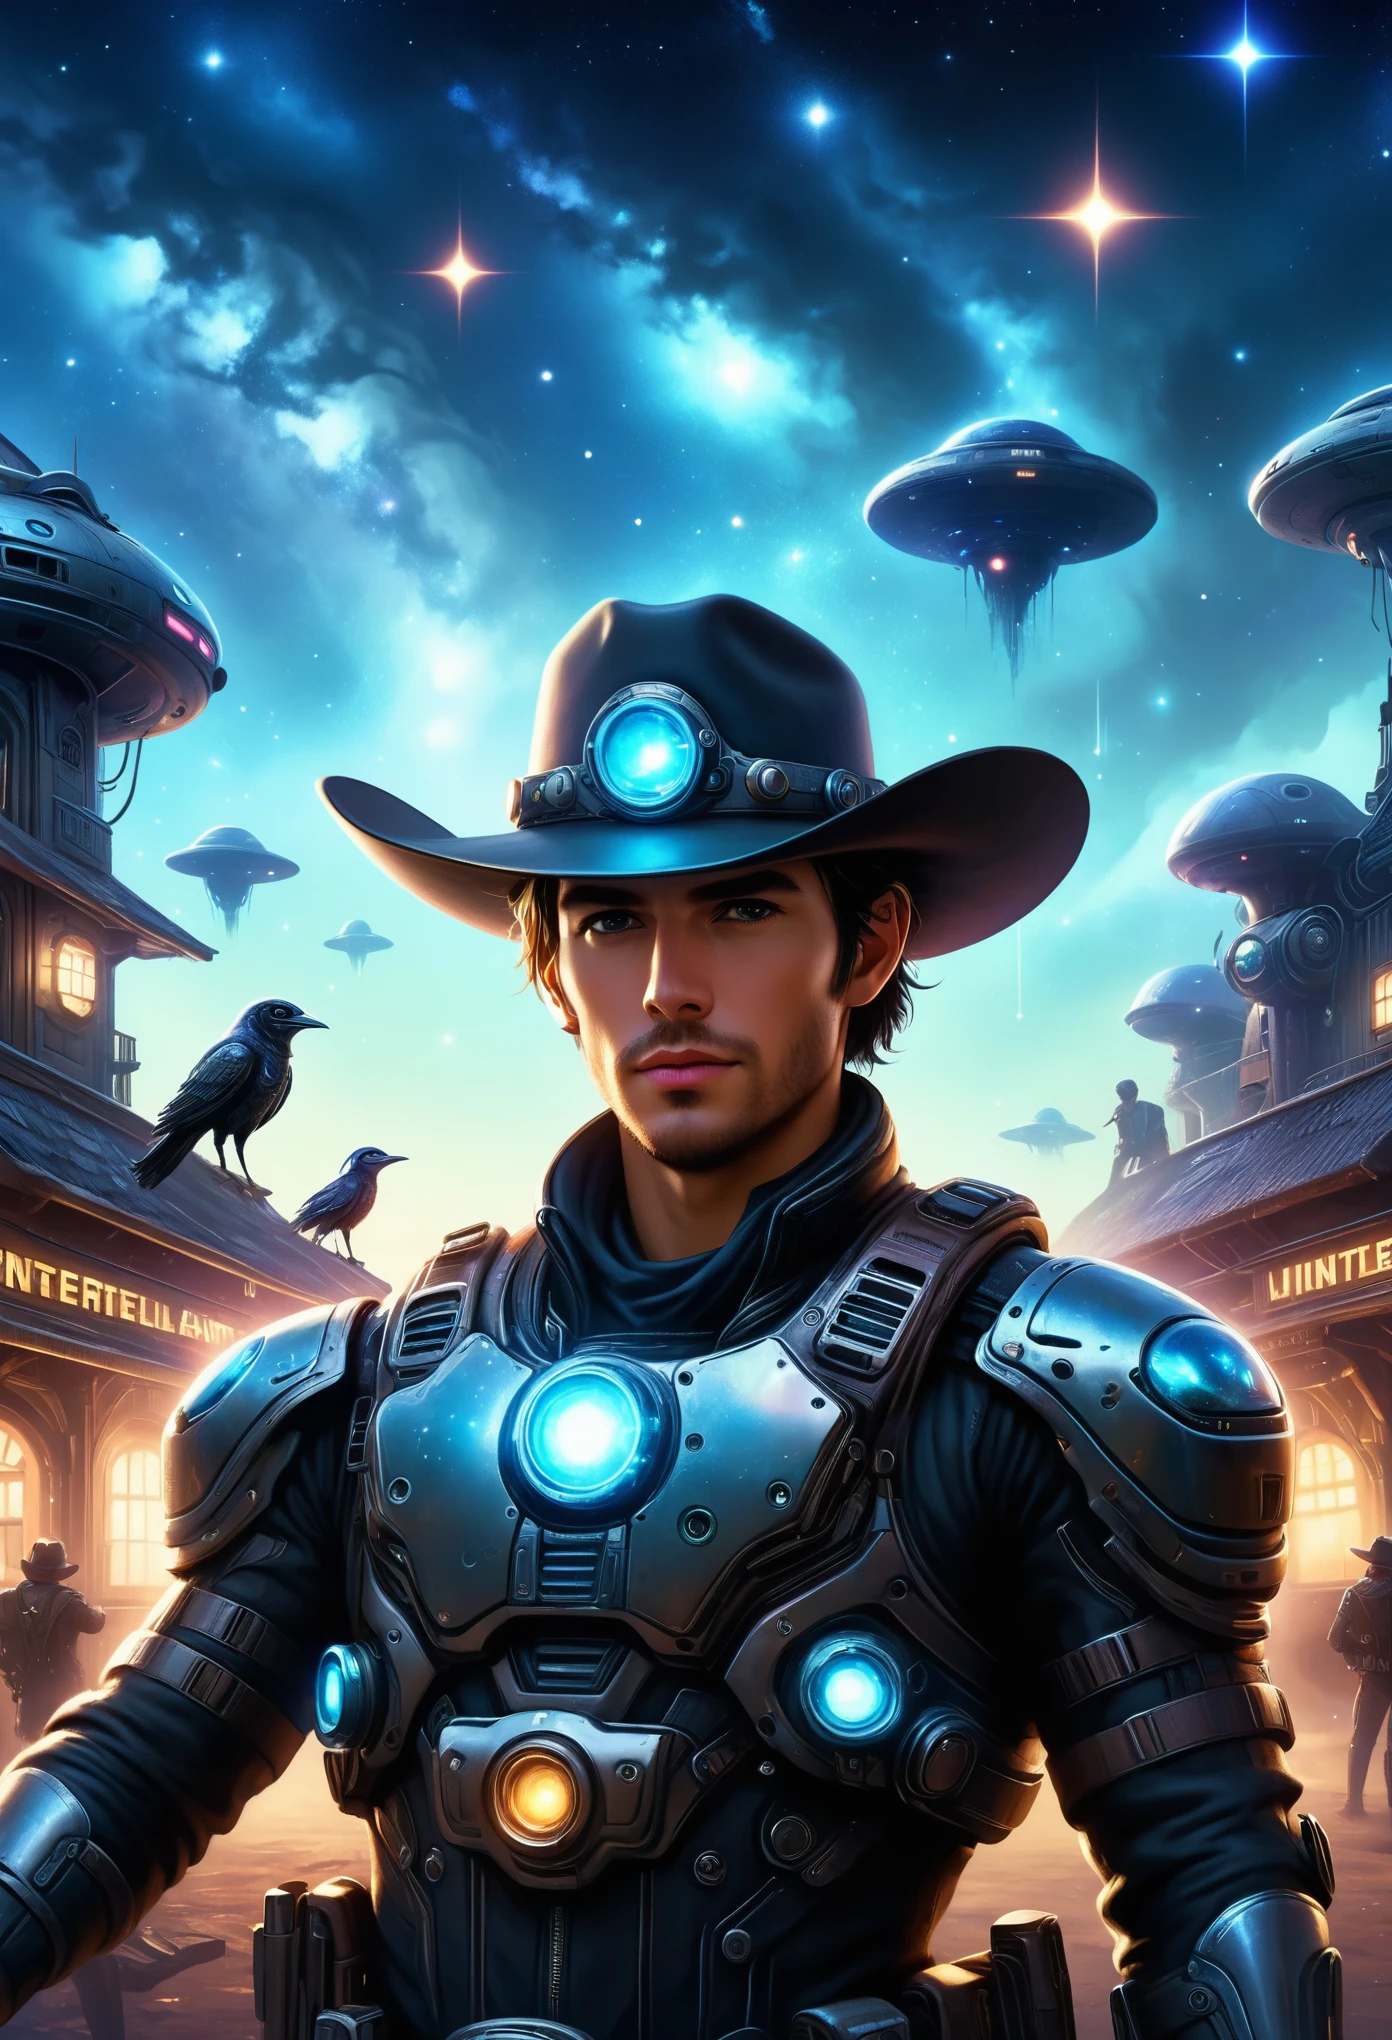 Cowboy cyberpunk em taverna interestelar，Fundo futurista do céu estrelado，tecnologia alienígena，Cowboy Mecânico